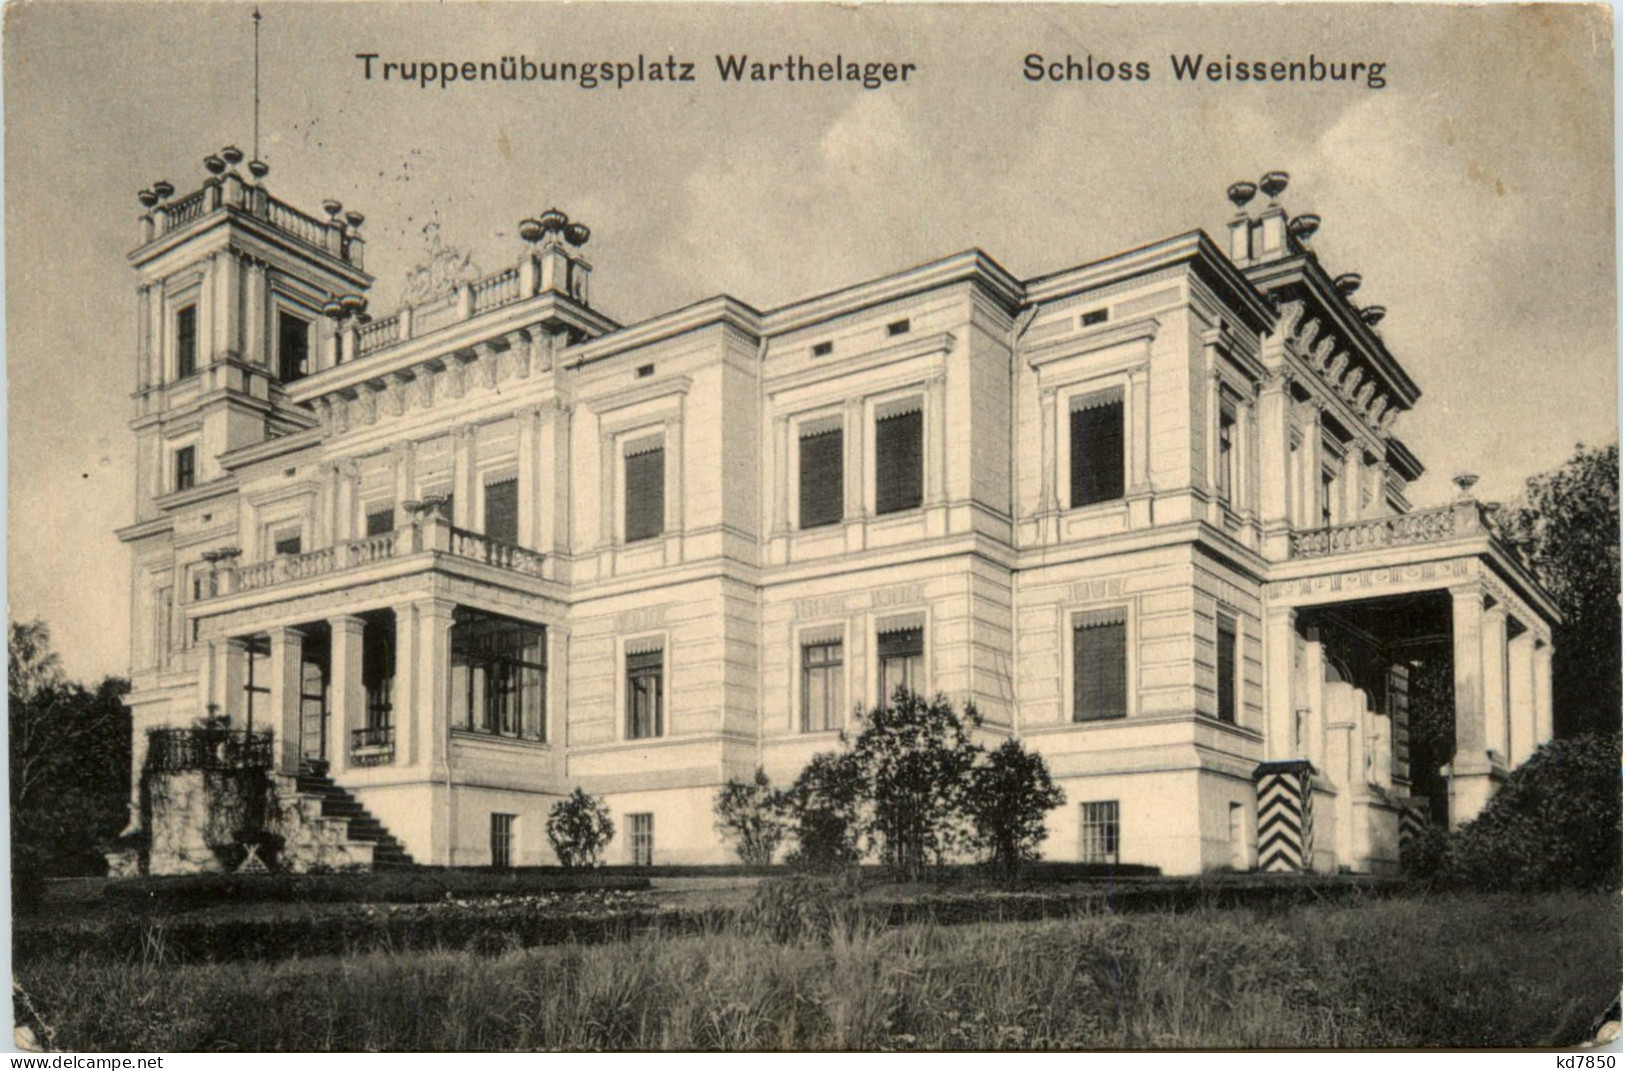 Truppenübungsplatz Warthelager - Schloss Weissenburg - Posen